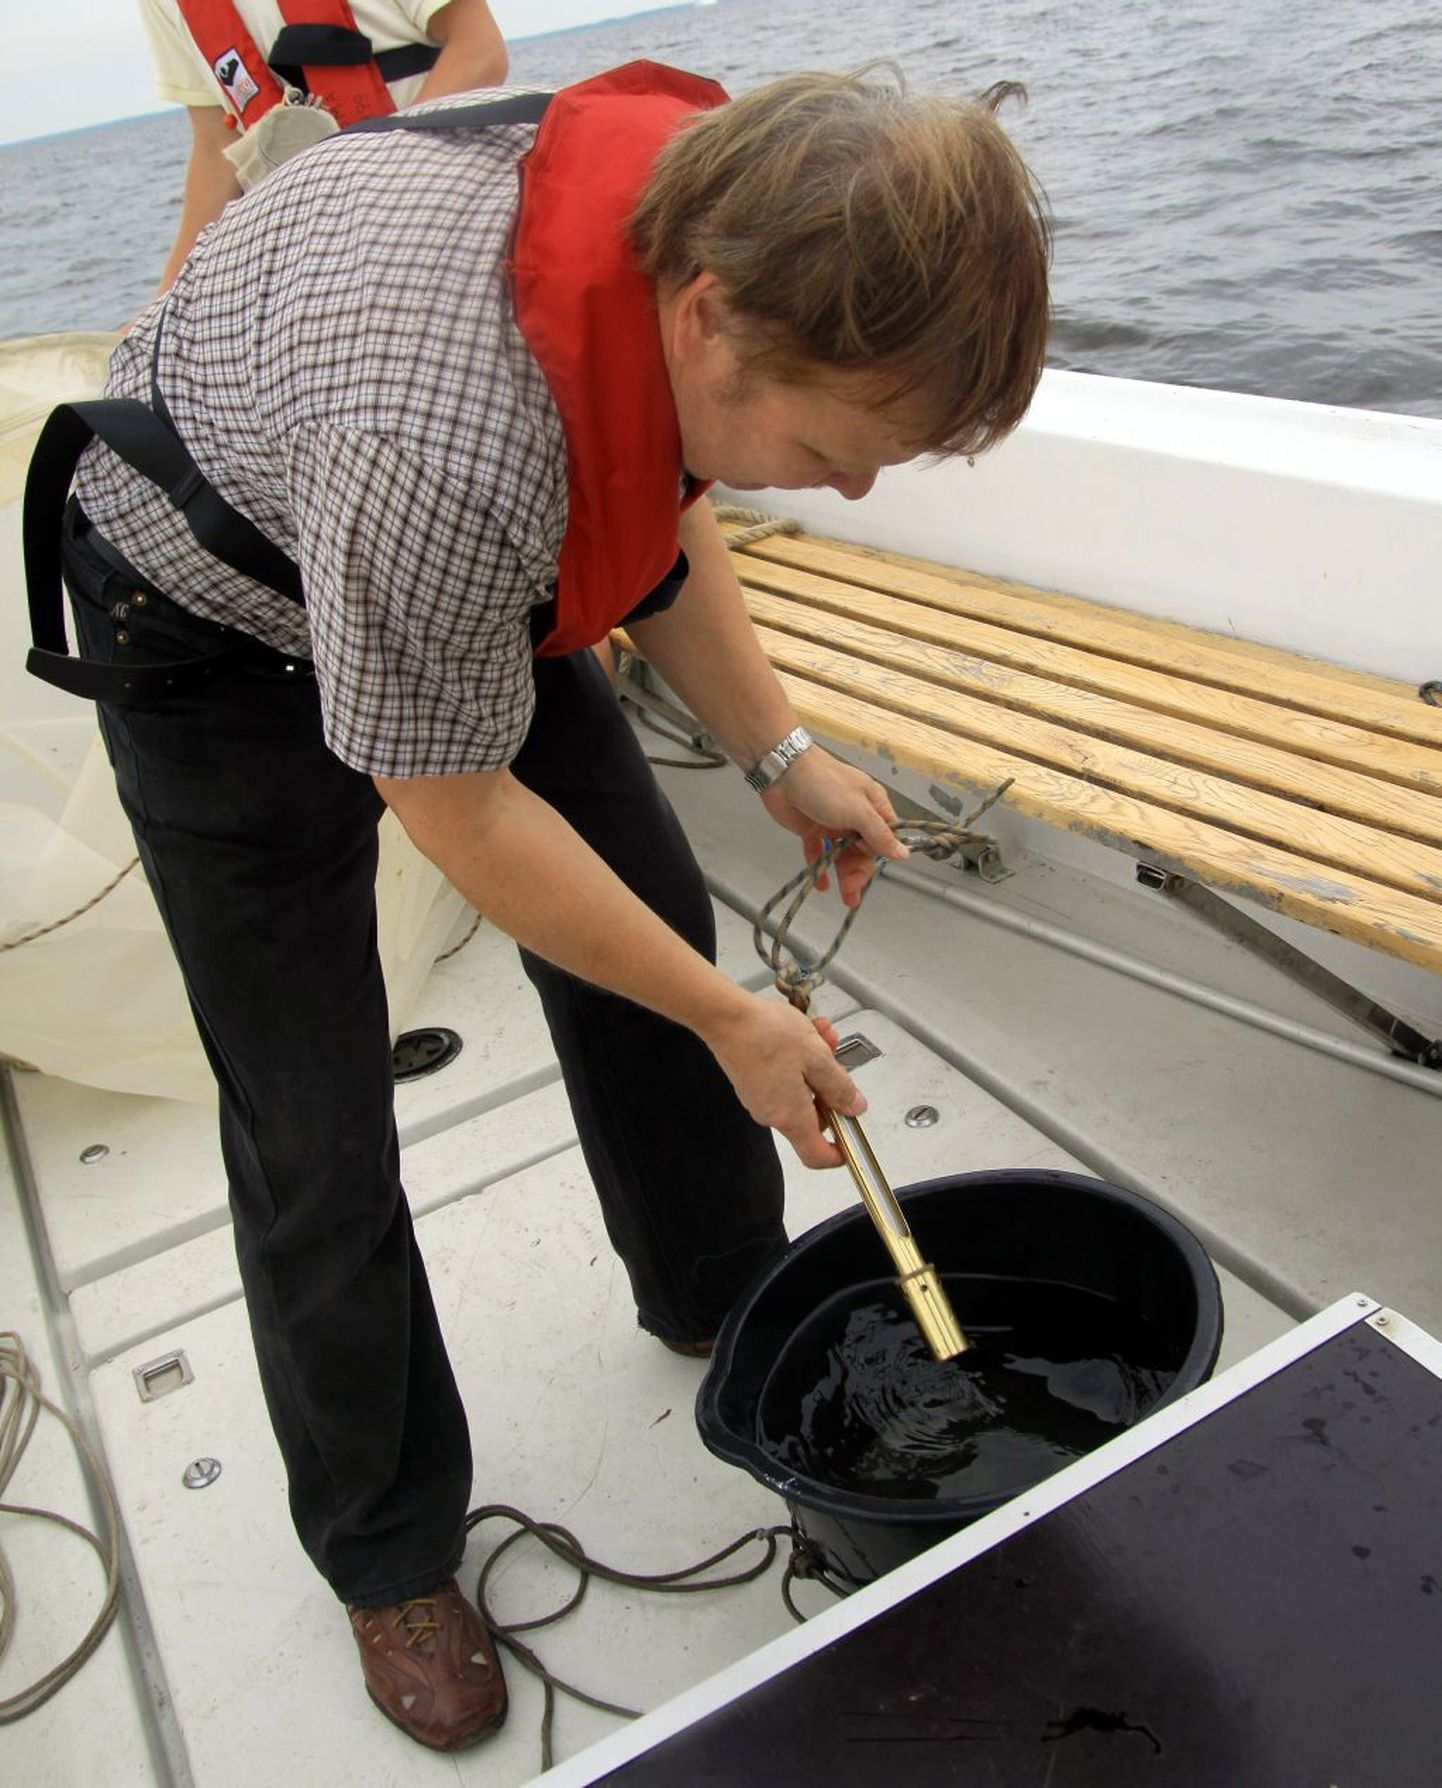 Ihtüoloog Ain Lankov mõõdab lahe vee temperatuuri erinevates veekihtides.